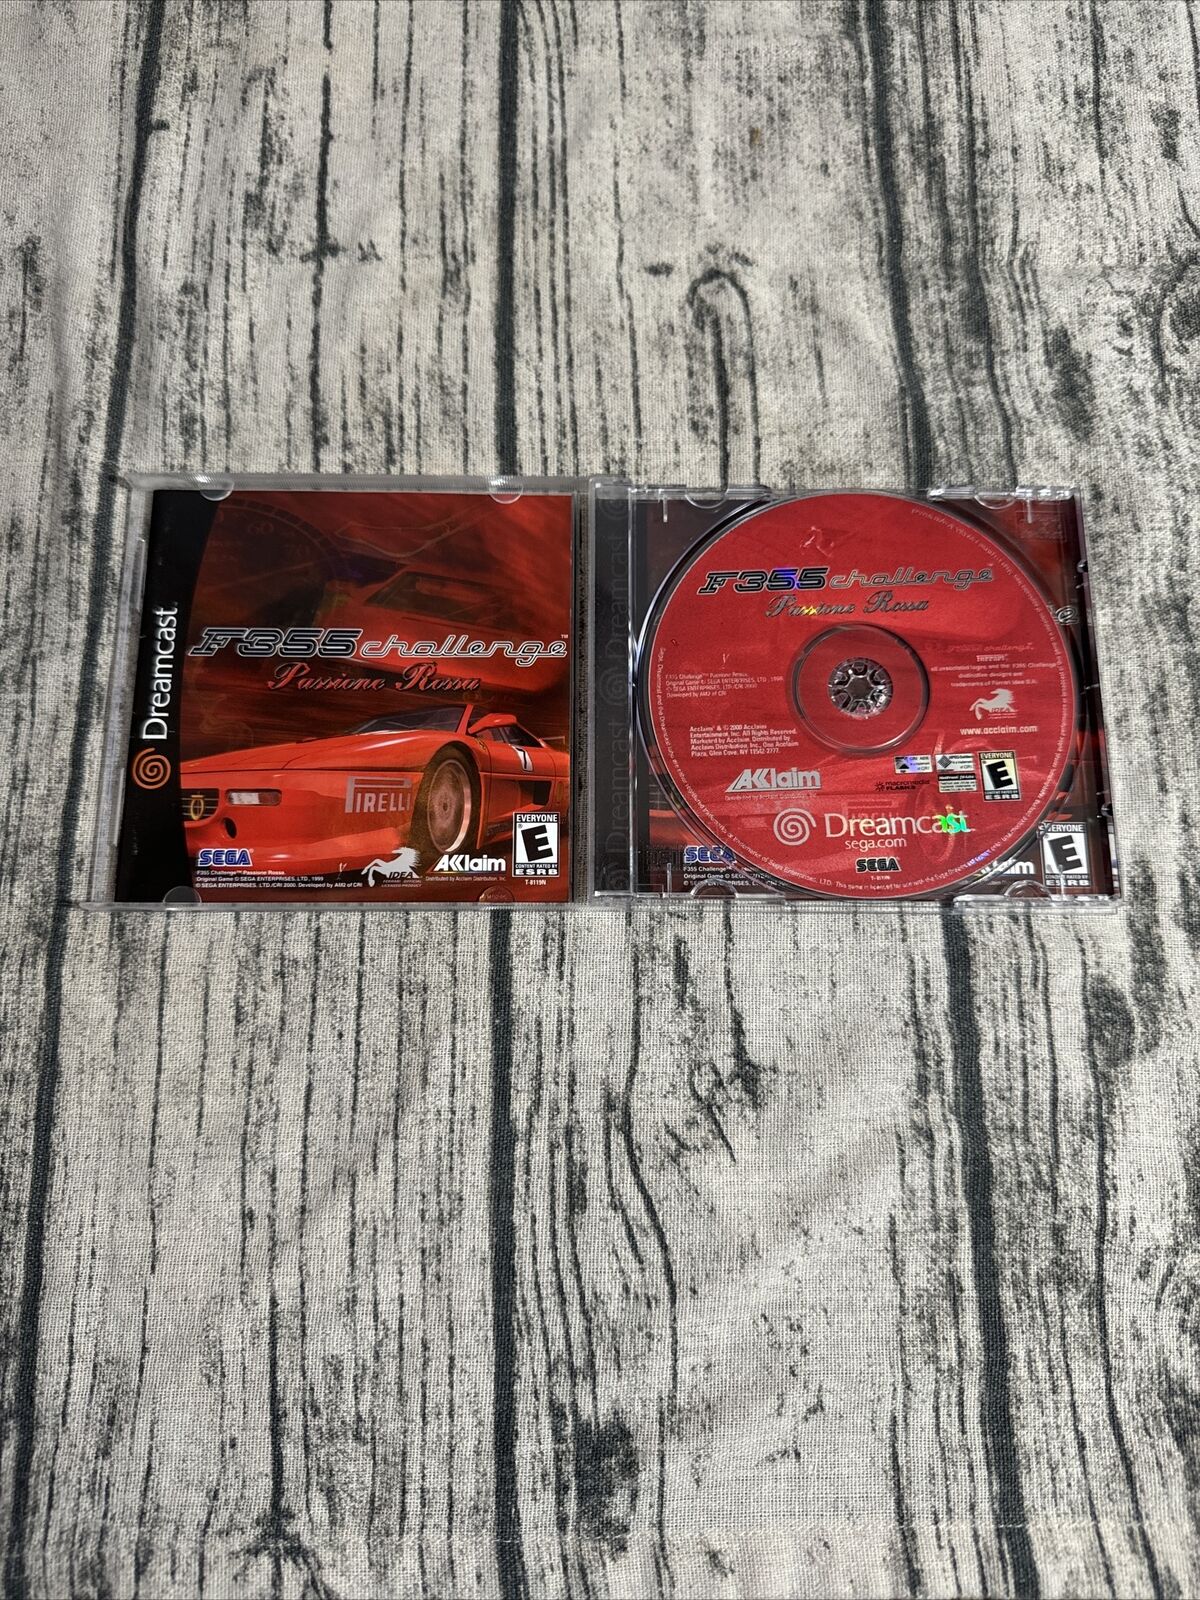 F355 Challenge: Passione Rossa (Sega Dreamcast) Complete w/ Manual & Reg Card